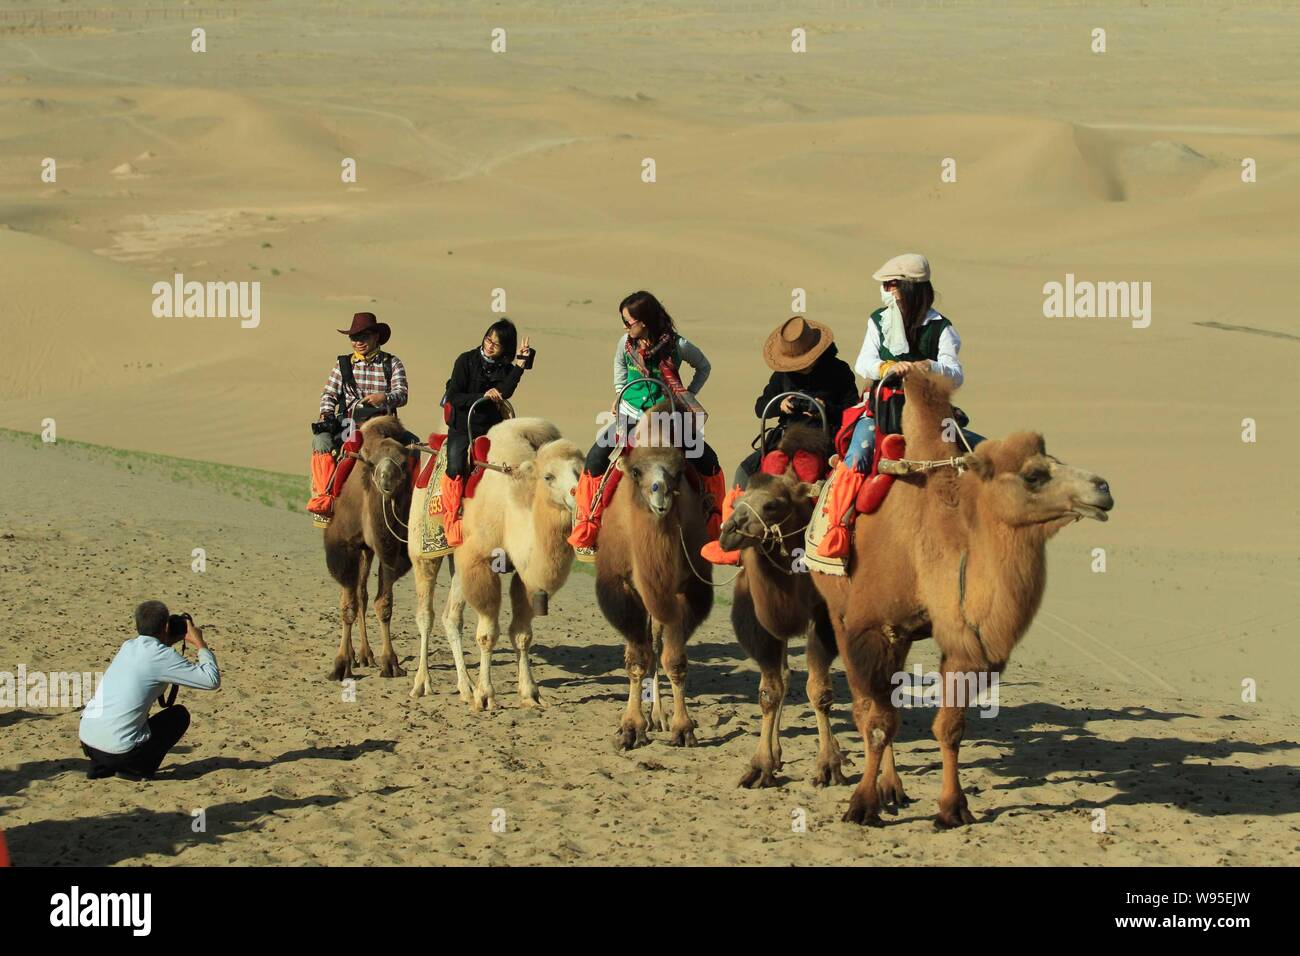 Les touristes monter des chameaux dans le désert dans le Croissant de lune (Yueyaquan) et le chant des montagnes de sable dans endroit pittoresque, au nord-ouest de la ville de Dunhuang Chines Banque D'Images